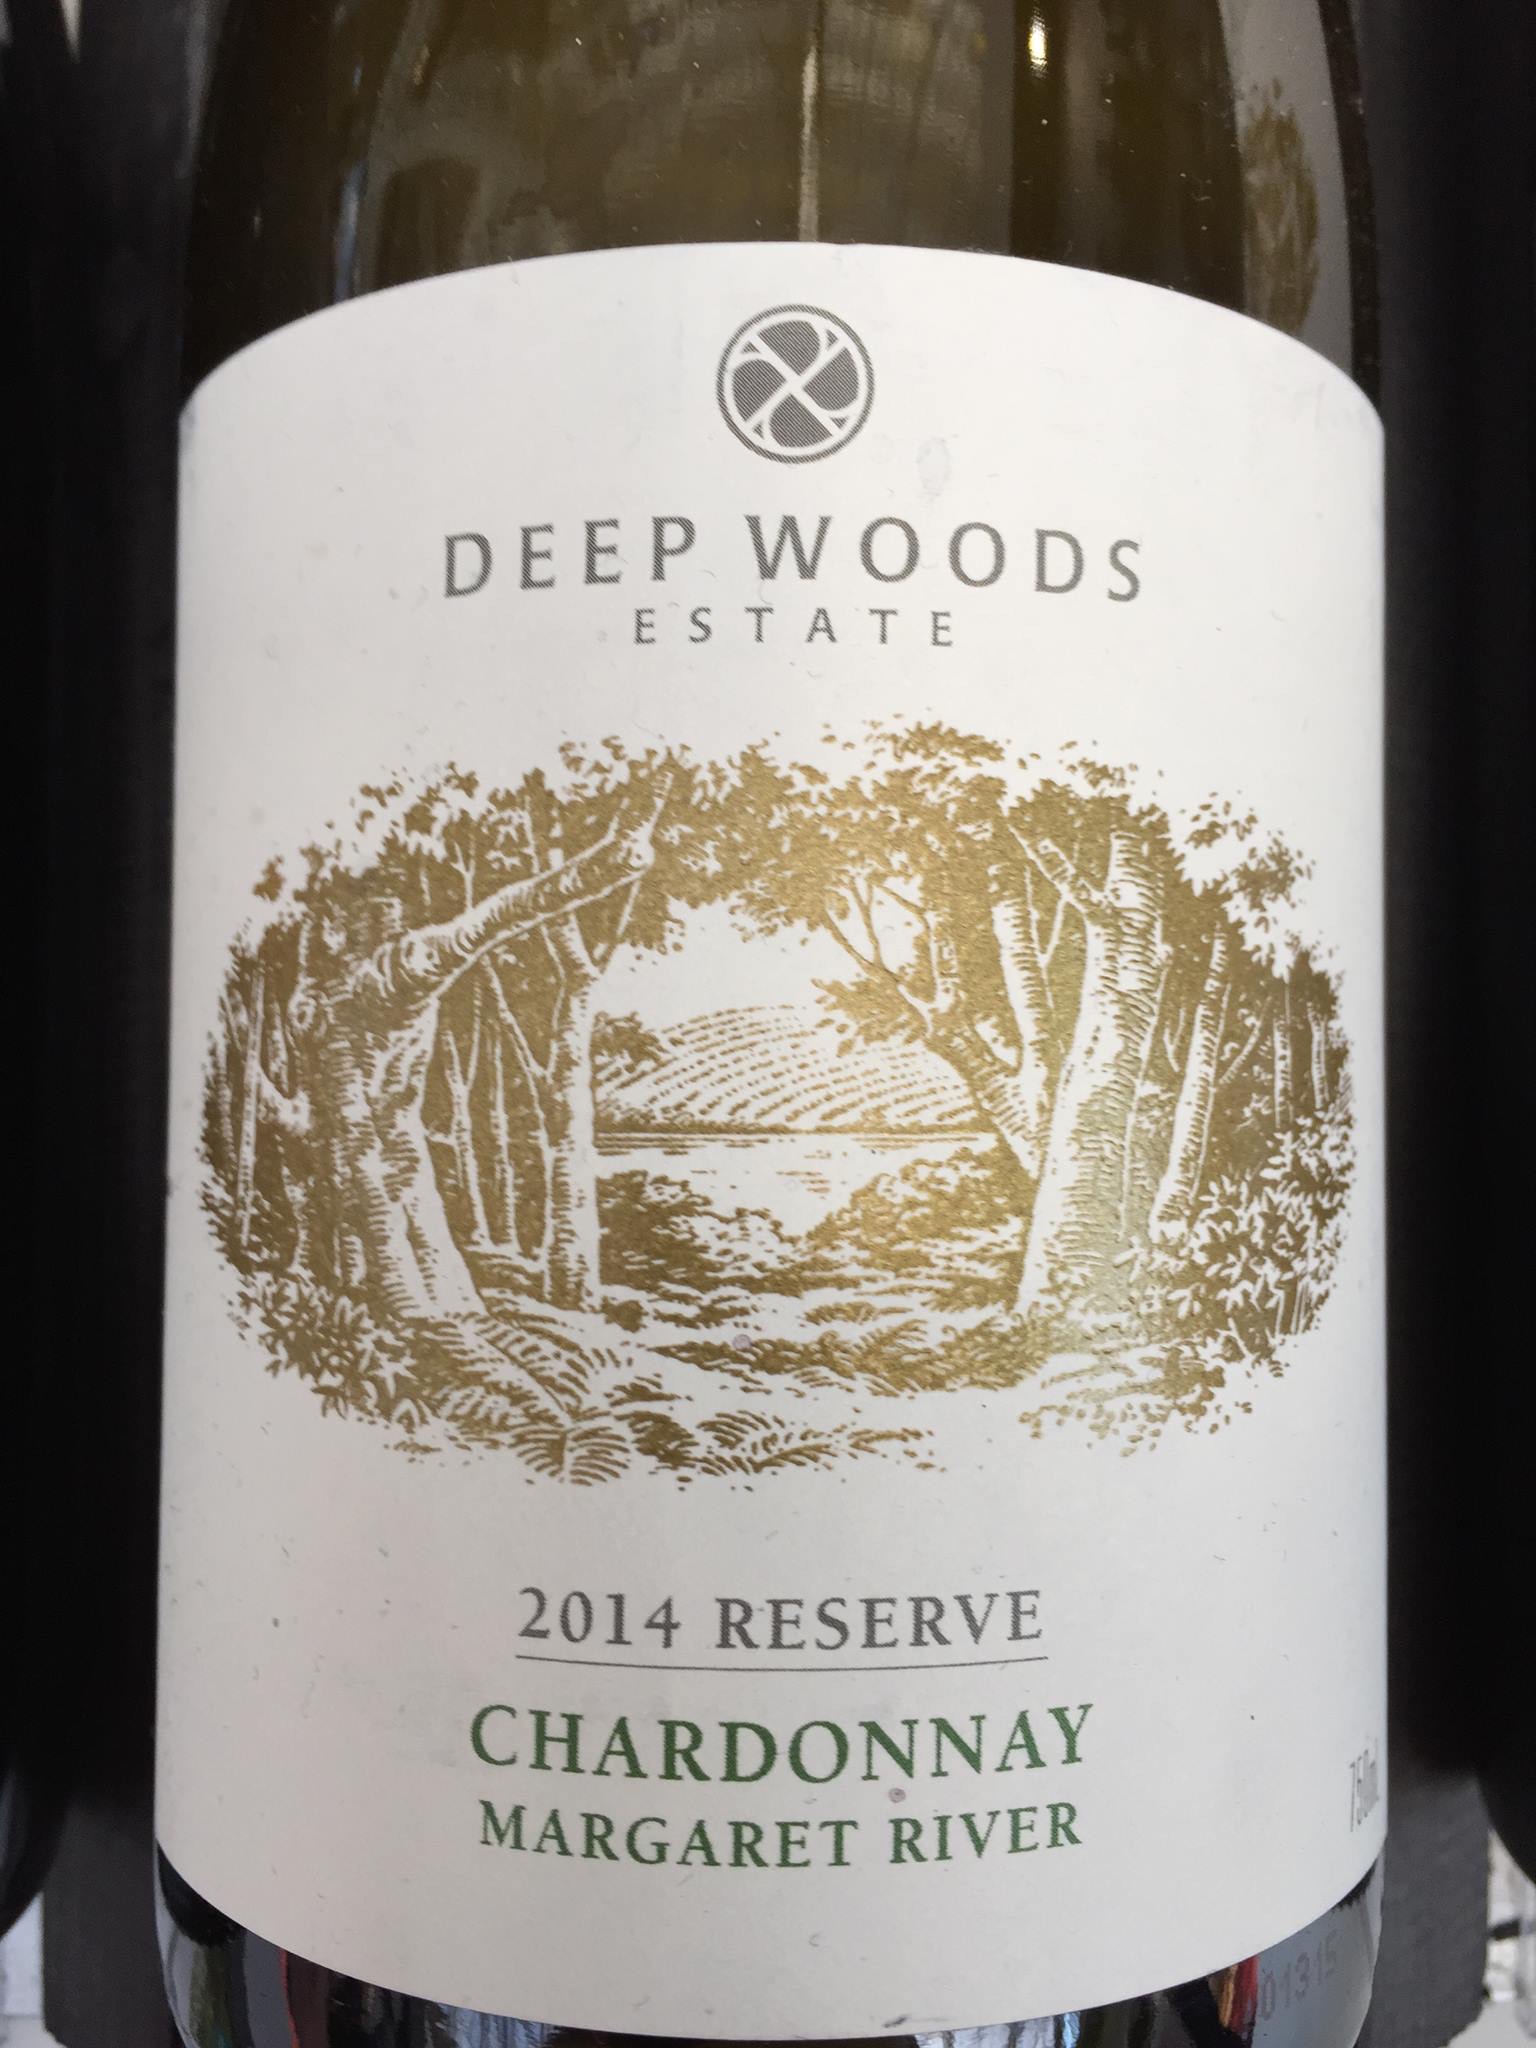 Deep Woods Estate – Chardonnay 2014 Reserve – Margaret River